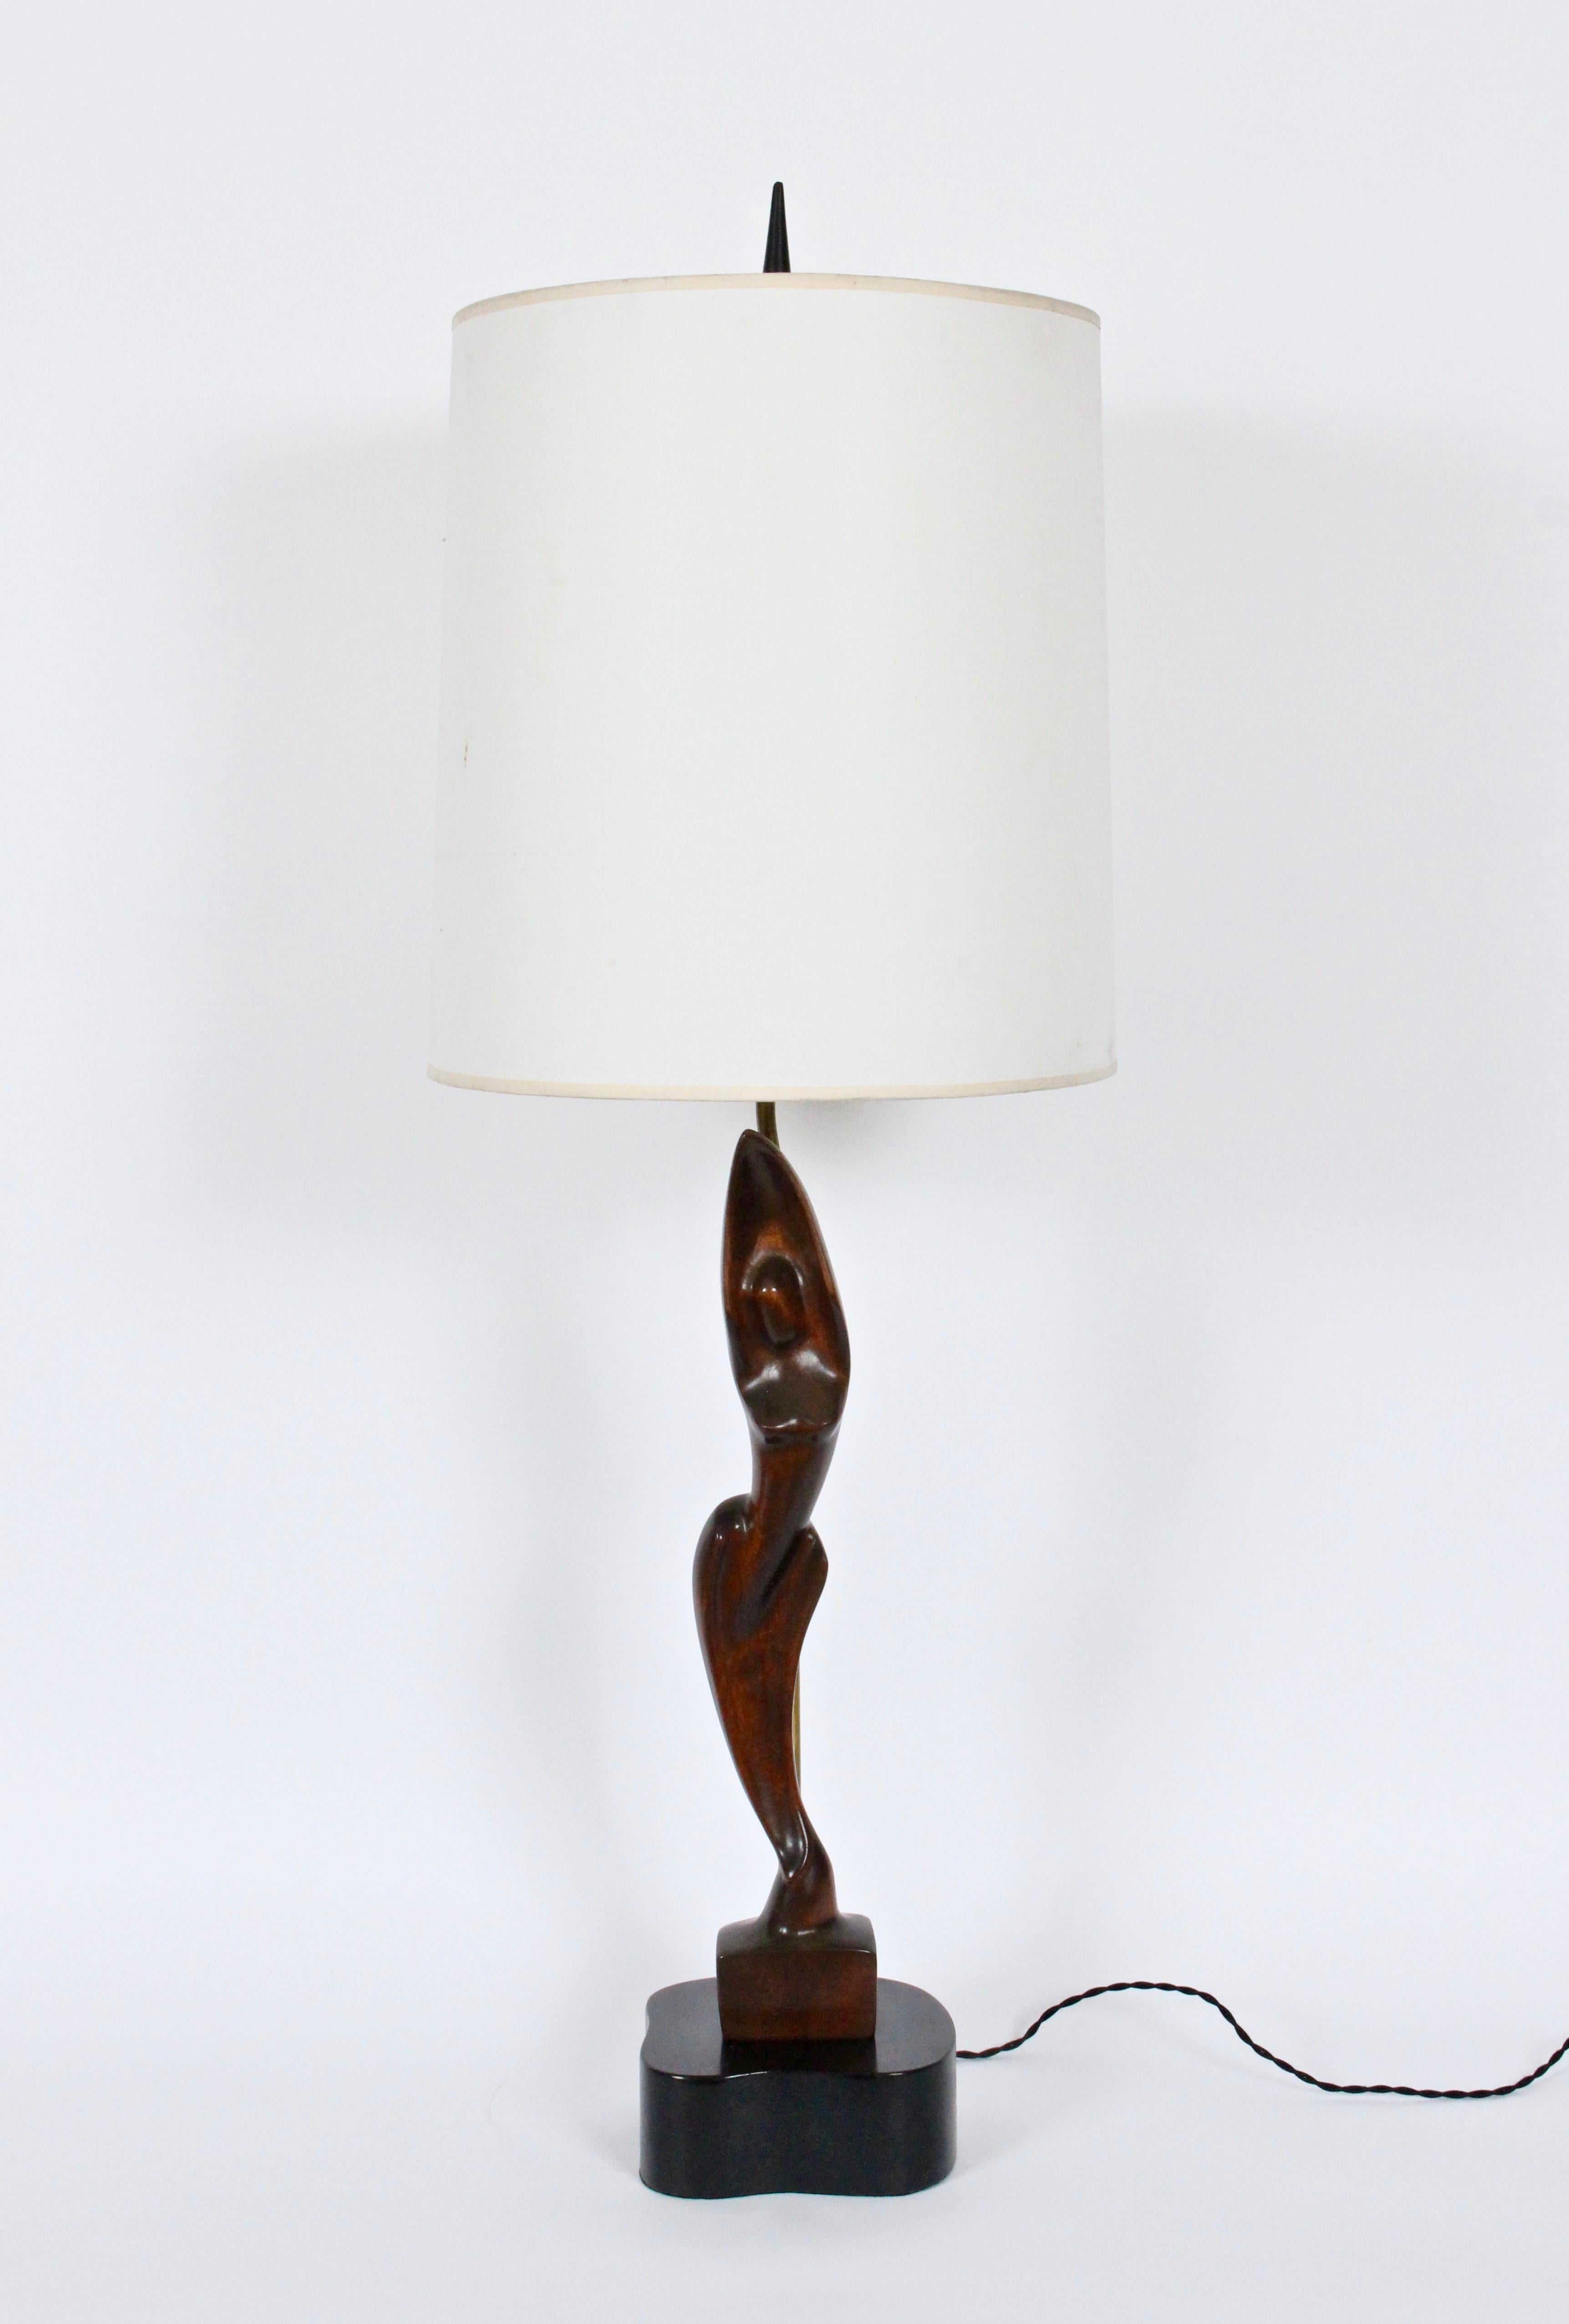 Monumentale lampe de table de forme féminine en acajou sculpté à la main par Yasha Heifetz. Figure mince et lisse en acajou, fabriquée à la main et montée sur un socle en bois émaillé noir de forme libre. Faible encombrement. 30H jusqu'au sommet de